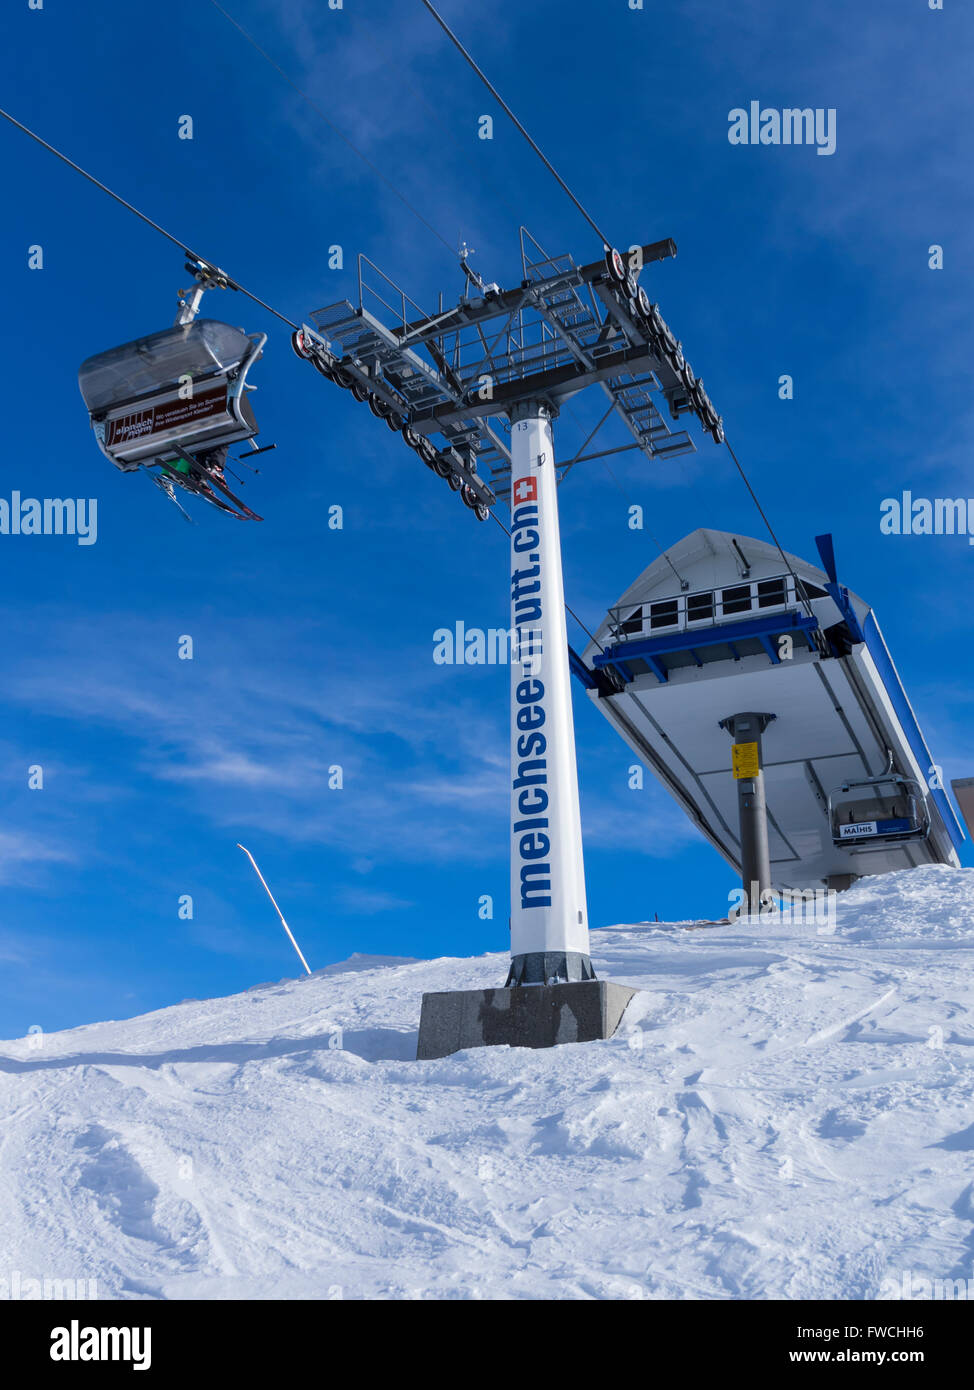 Télésiège à Melchsee-Frutt, Suisse, des skieurs sur une chaise, et un mât, la publicité de l'URL de la station de sports d'hiver. Banque D'Images